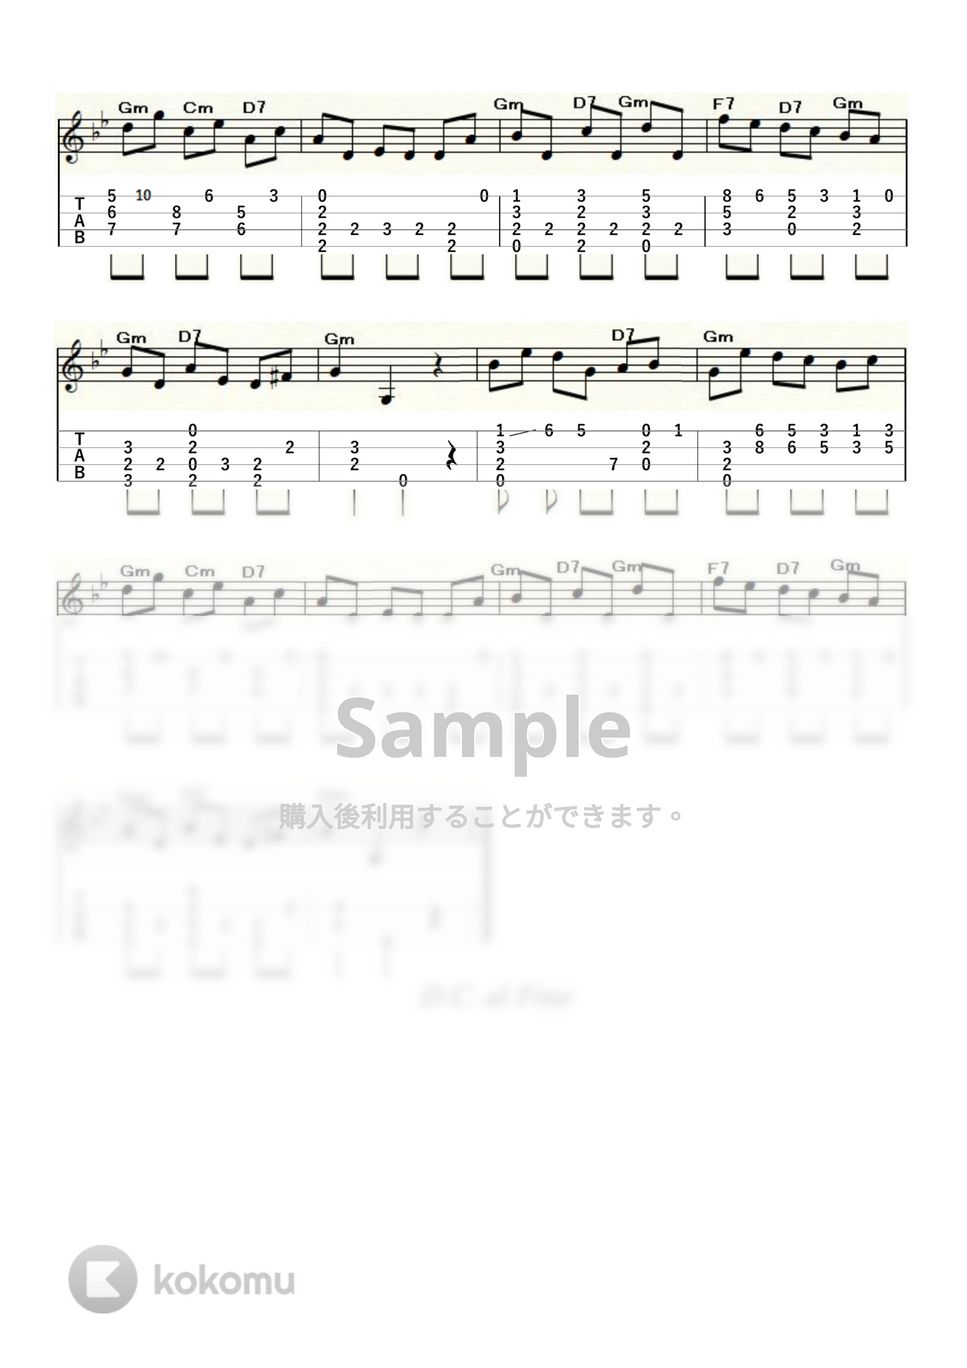 フランシスコ・タレガ - ラグリマ (ｳｸﾚﾚｿﾛ/Low-G/中級) by ukulelepapa